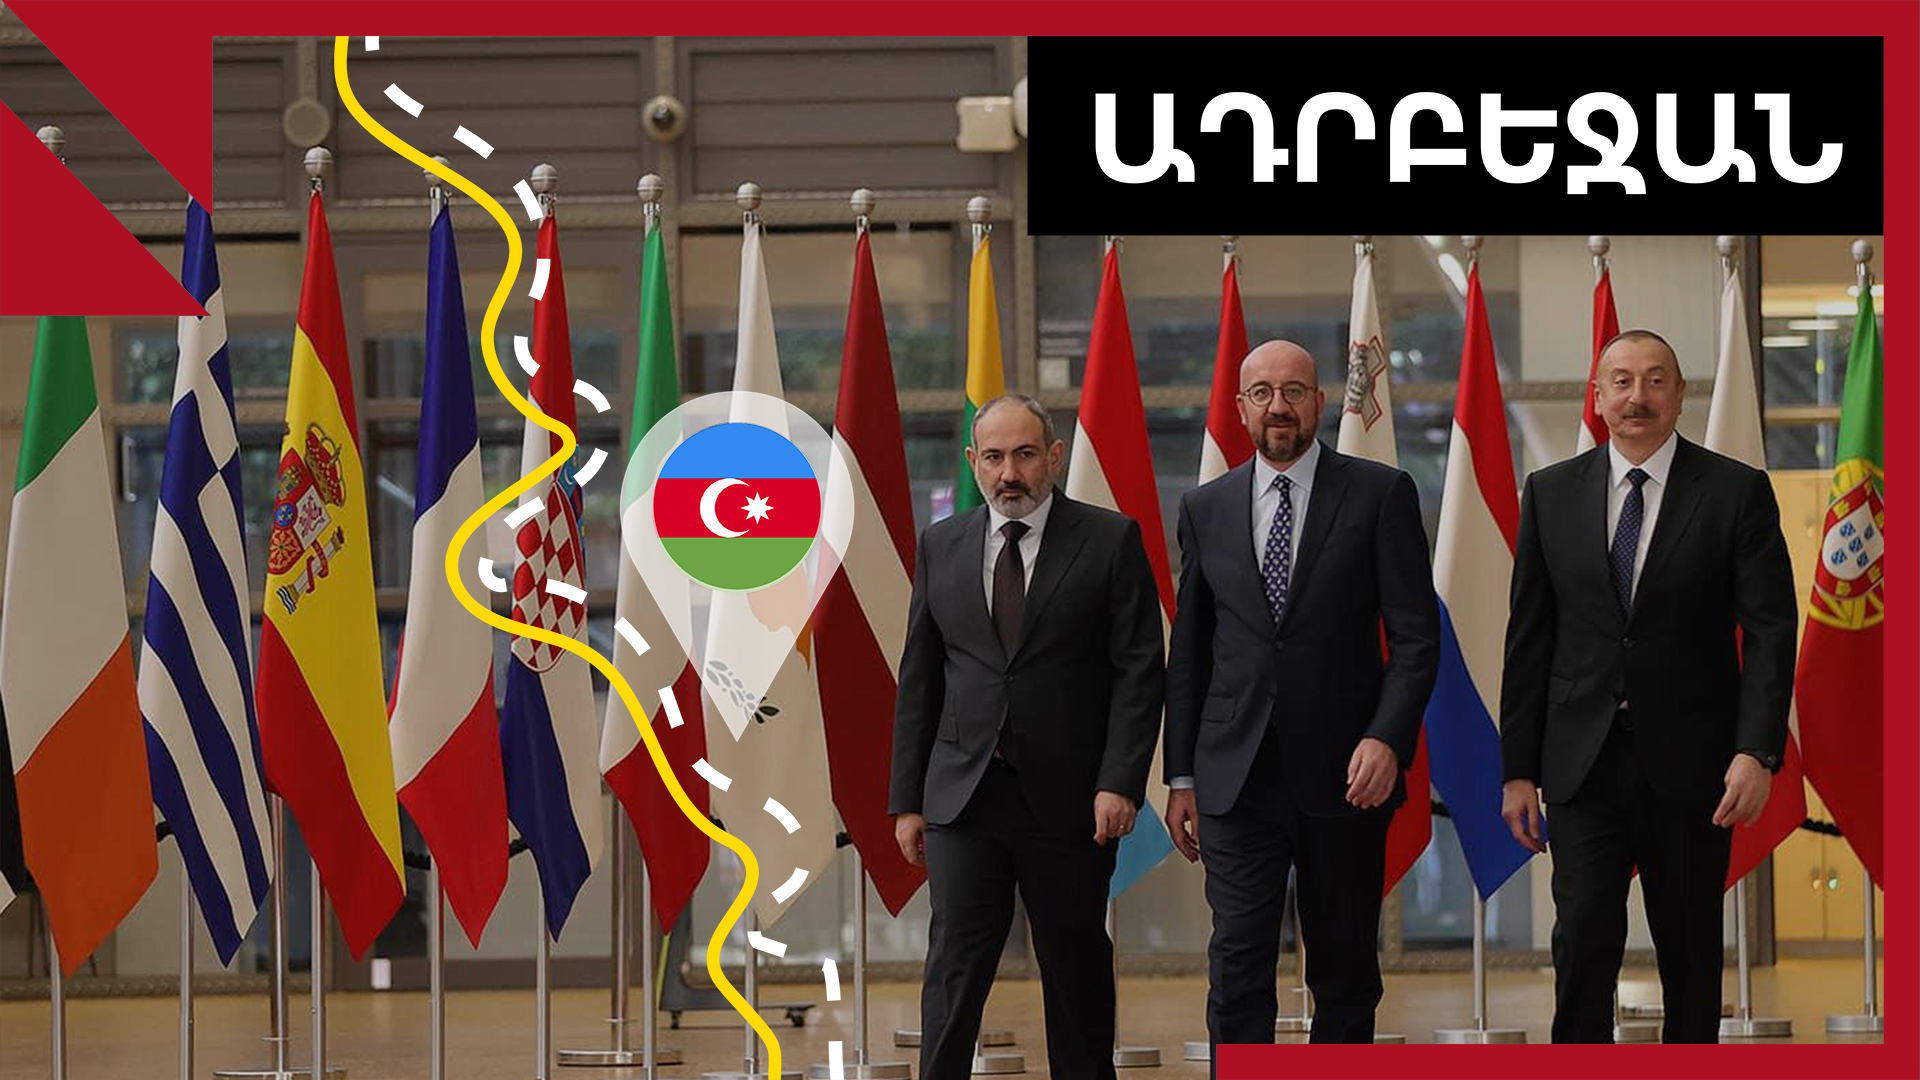 Առաջիկայում սպասե՞լ, թե՞ ոչ խաղաղության պայմանագիր․ քննարկումներ Ադրբեջանում